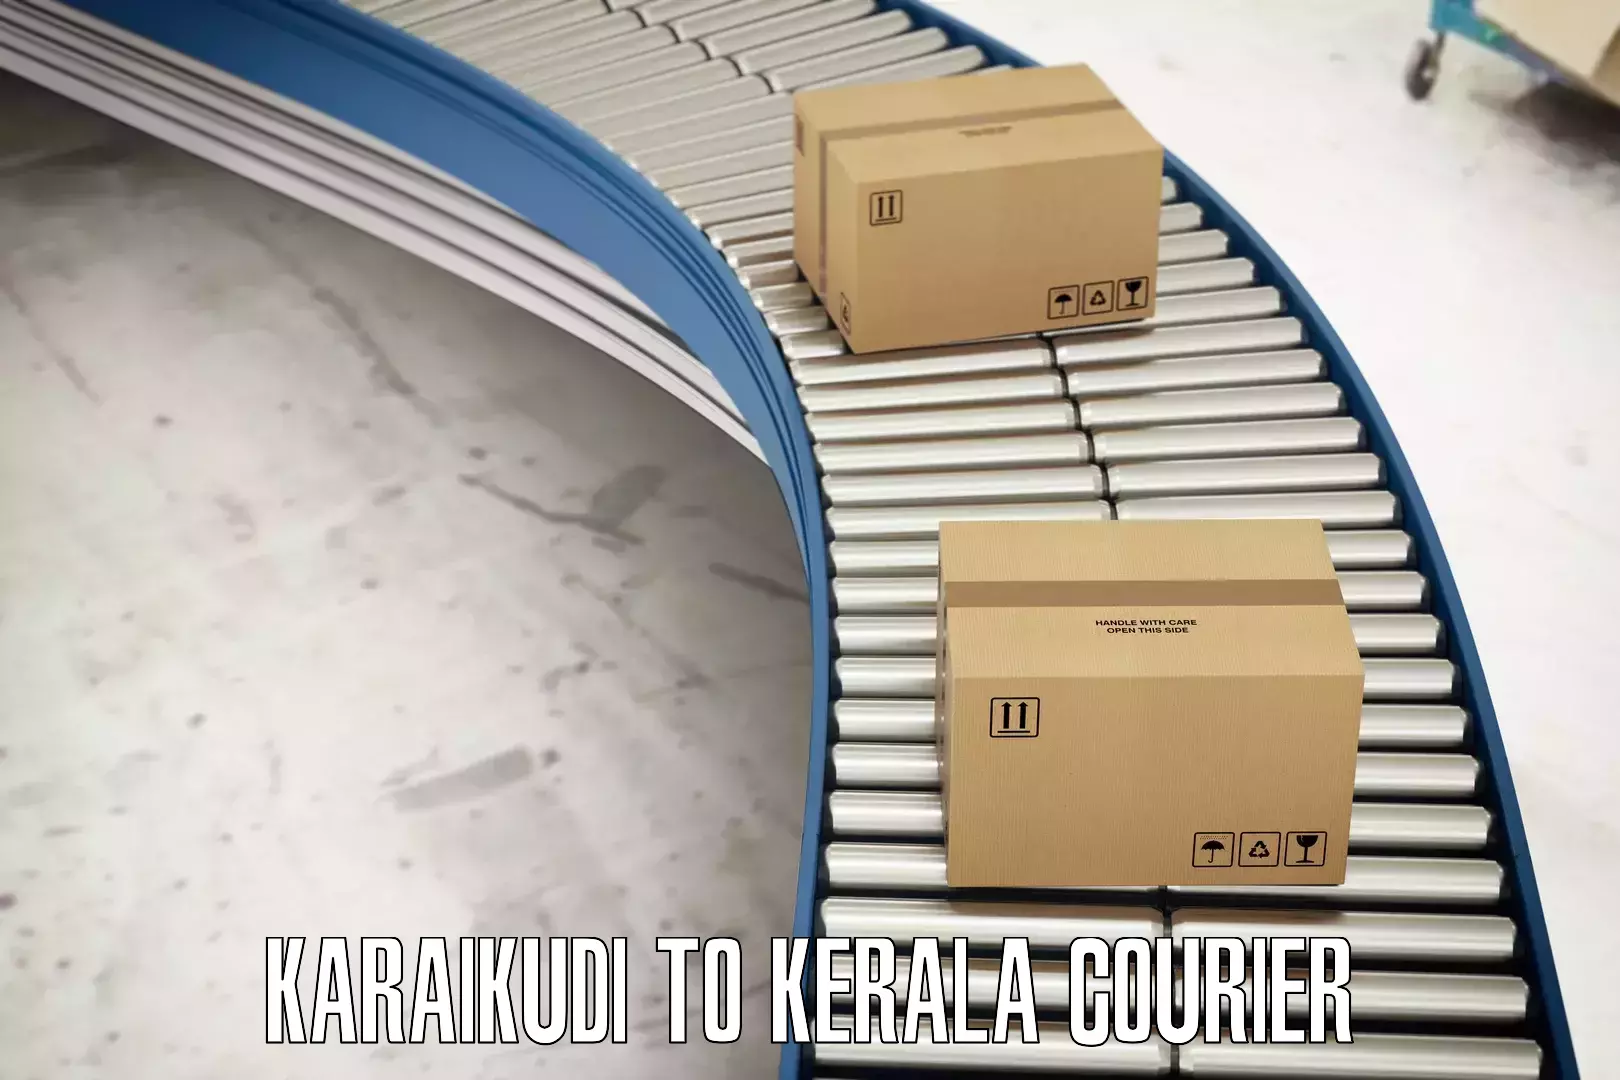 Premium courier solutions Karaikudi to Guruvayur